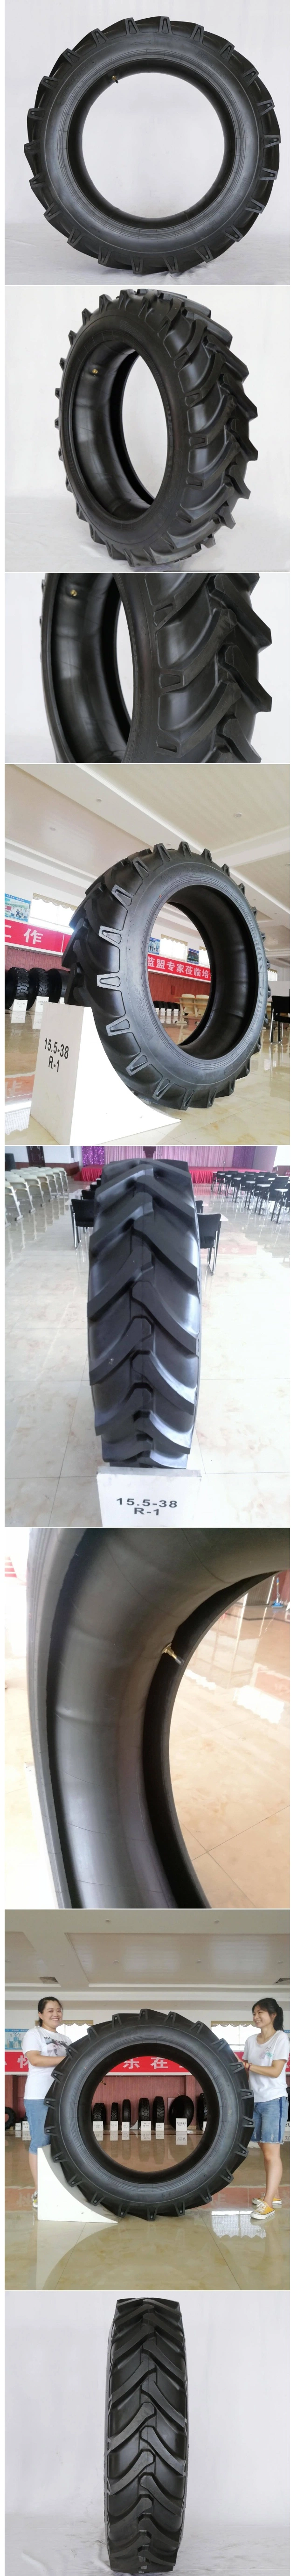 New Pattern 17.5-25 20.5-25 L-3 Loader Master OTR Tyres